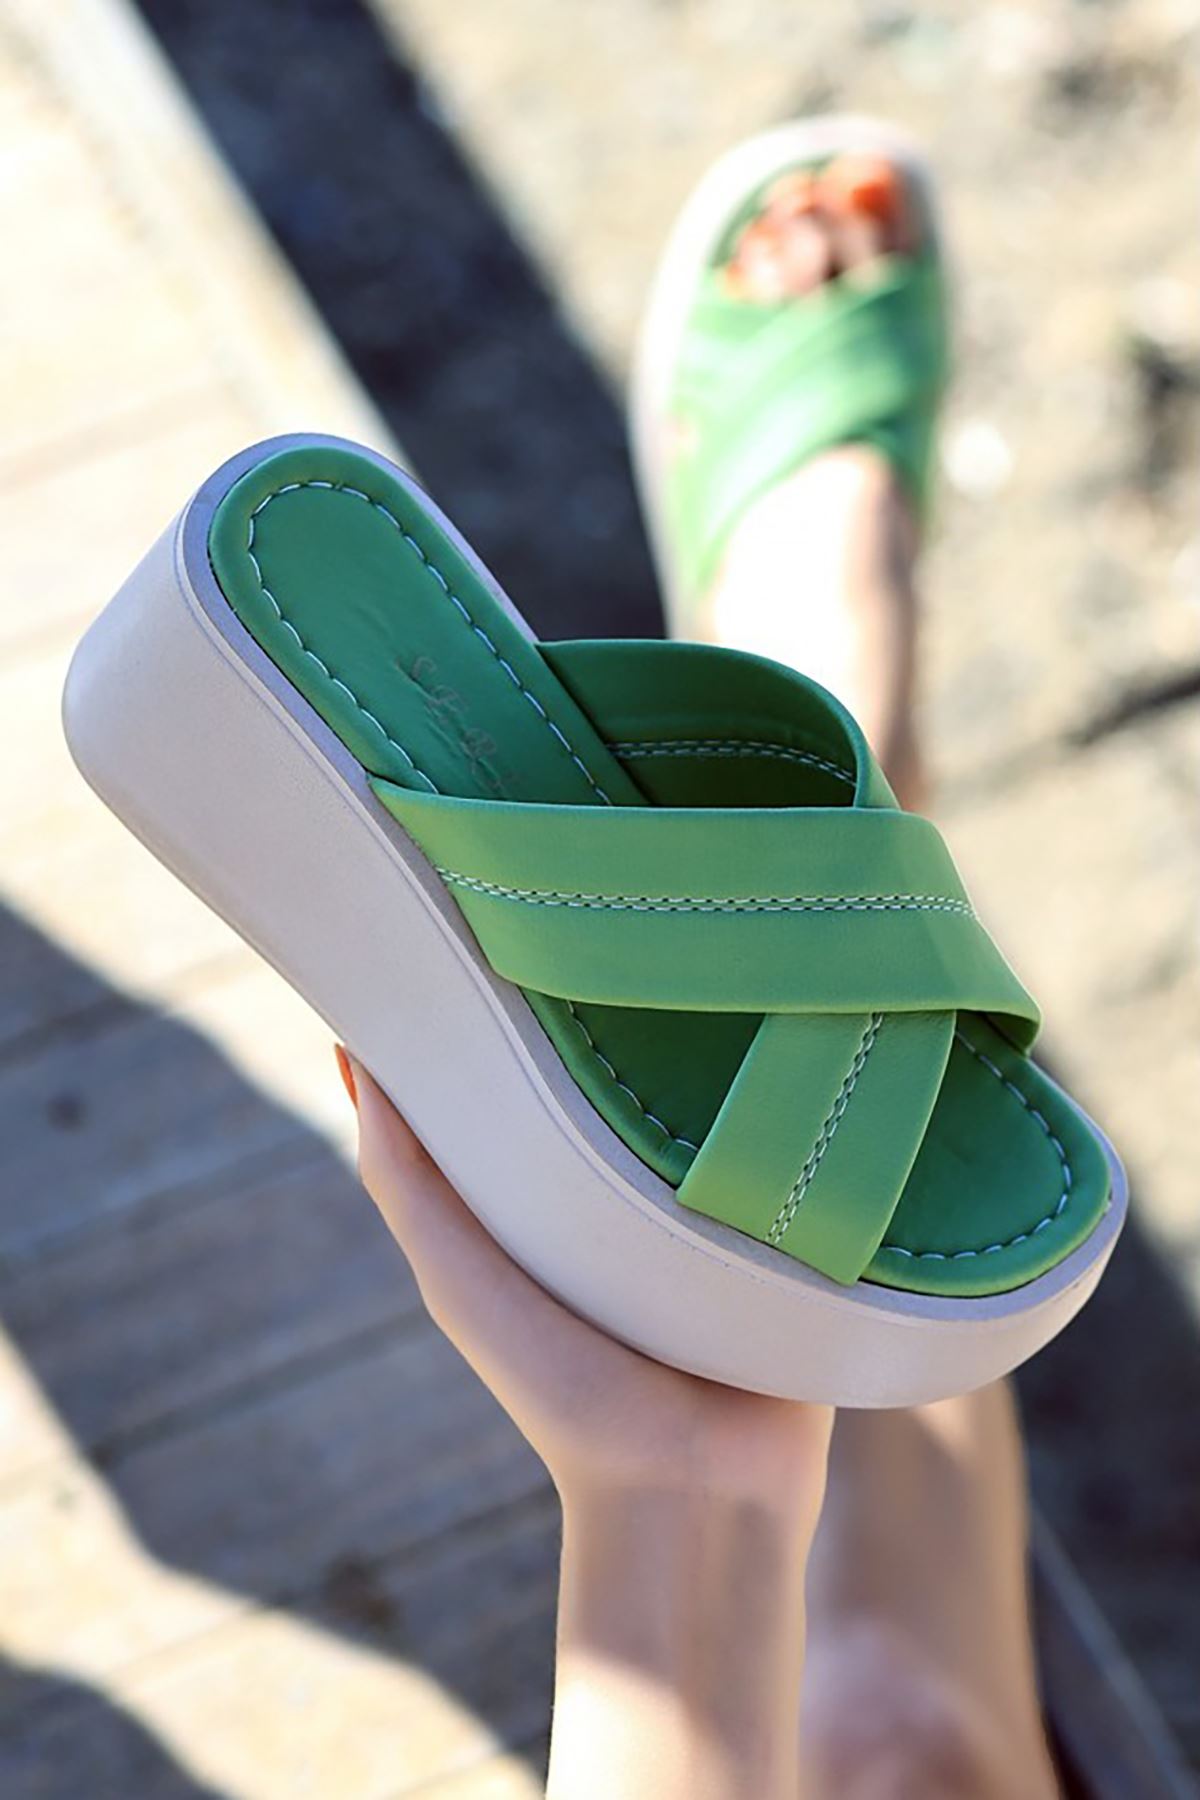 Mida Shoes ERBOben Yeşil Deri Kadın Dolgu Topuk Terlik